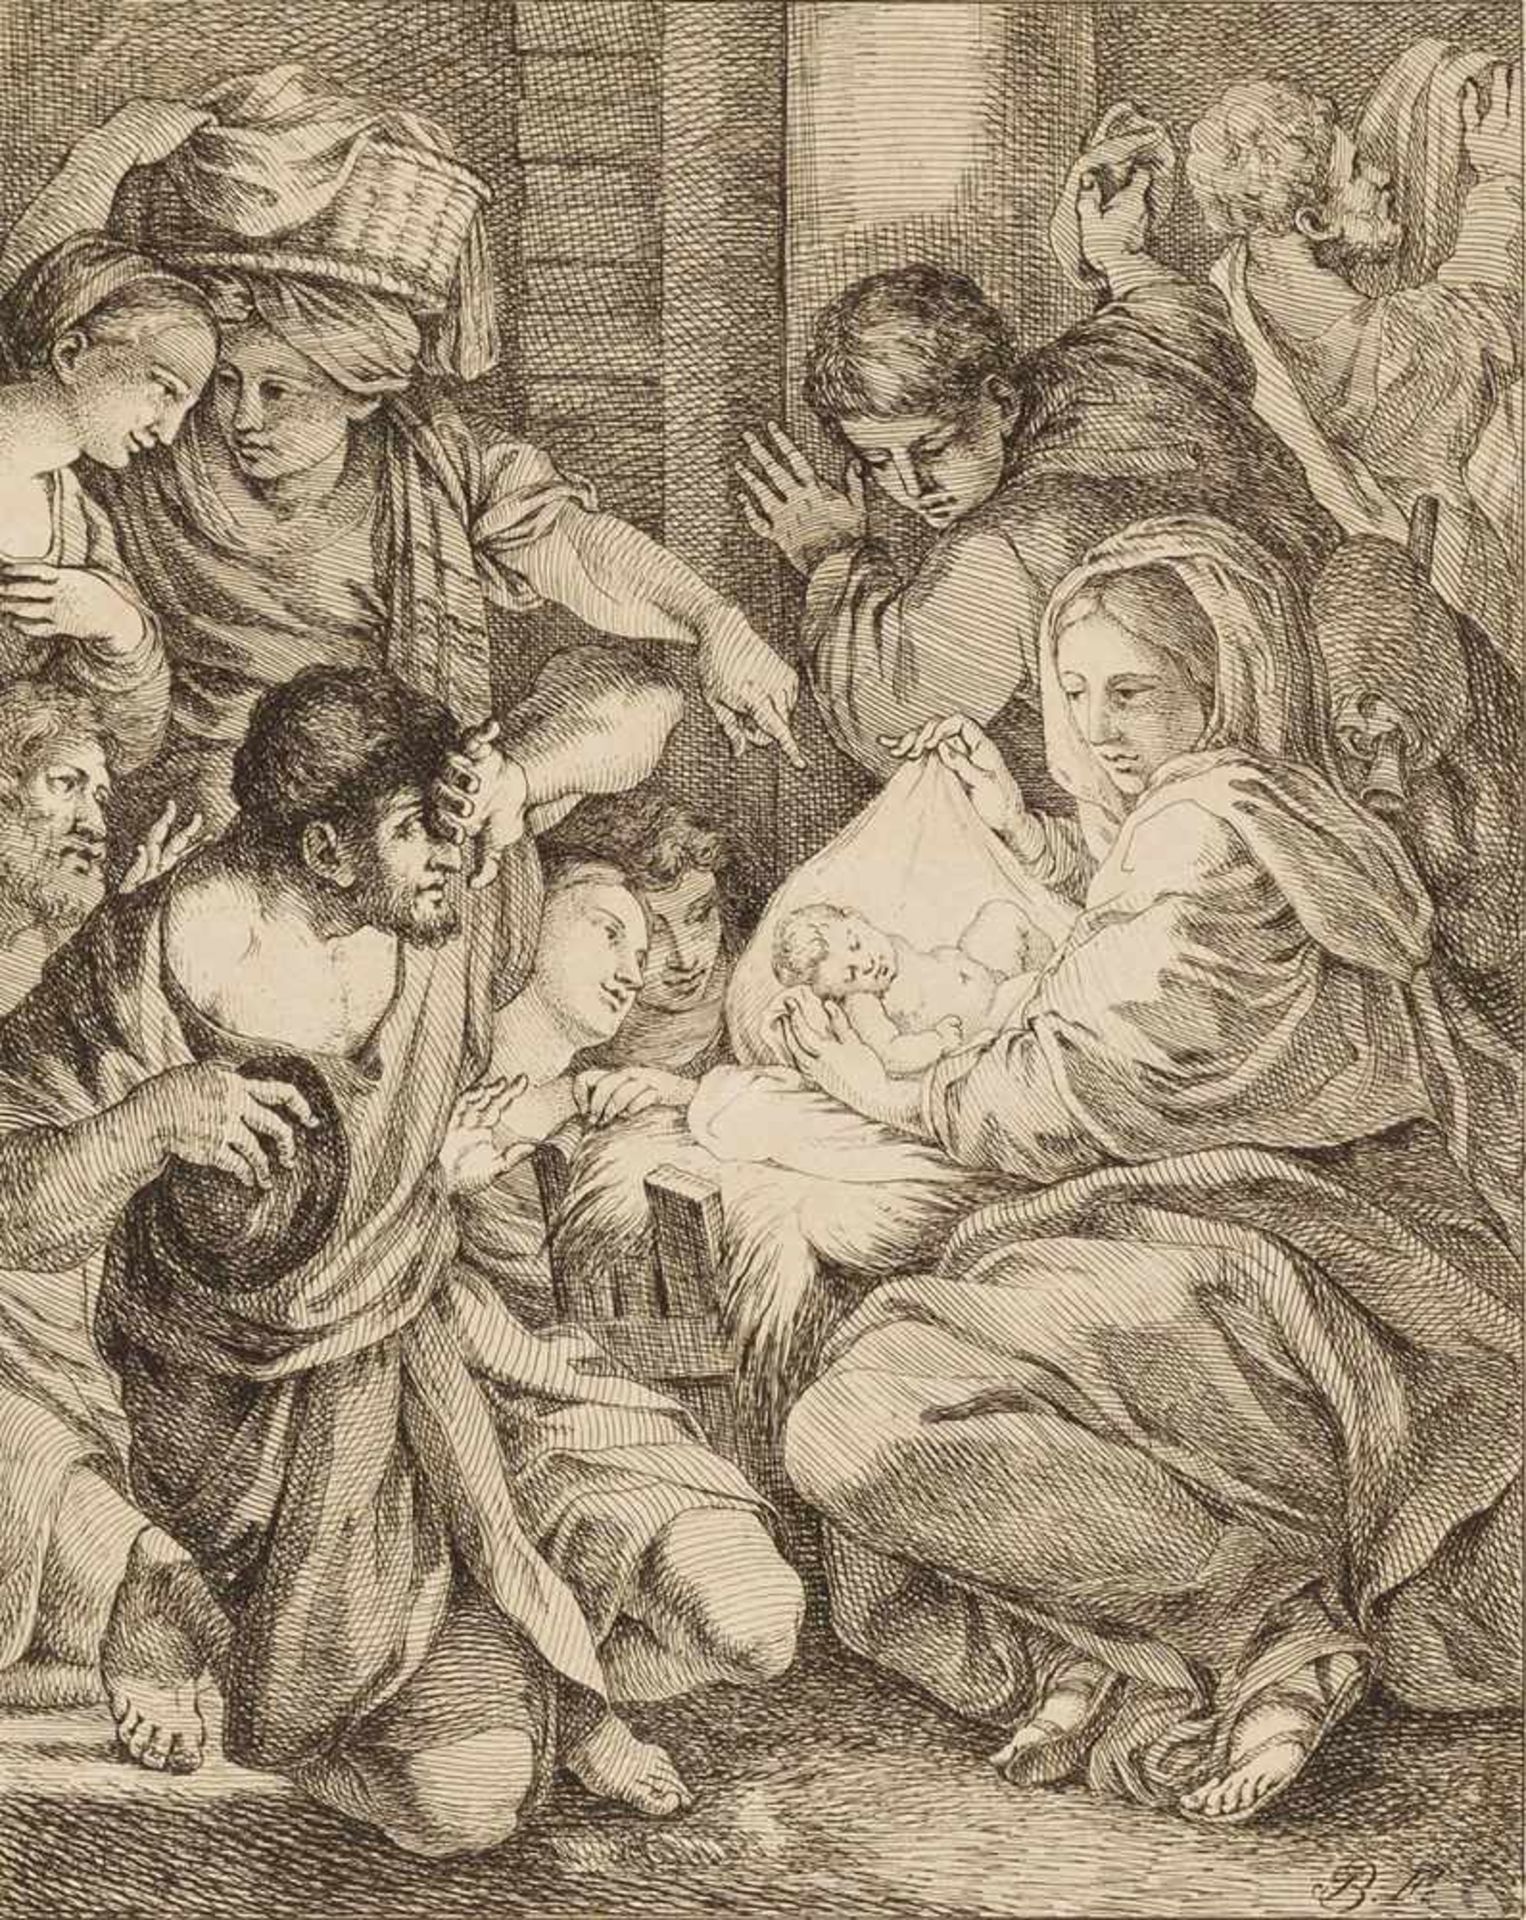 Carracci, Annibale (1560-1609), nach. Geburt Christi. Radierung von Joseph Bergler (1753-1829), in